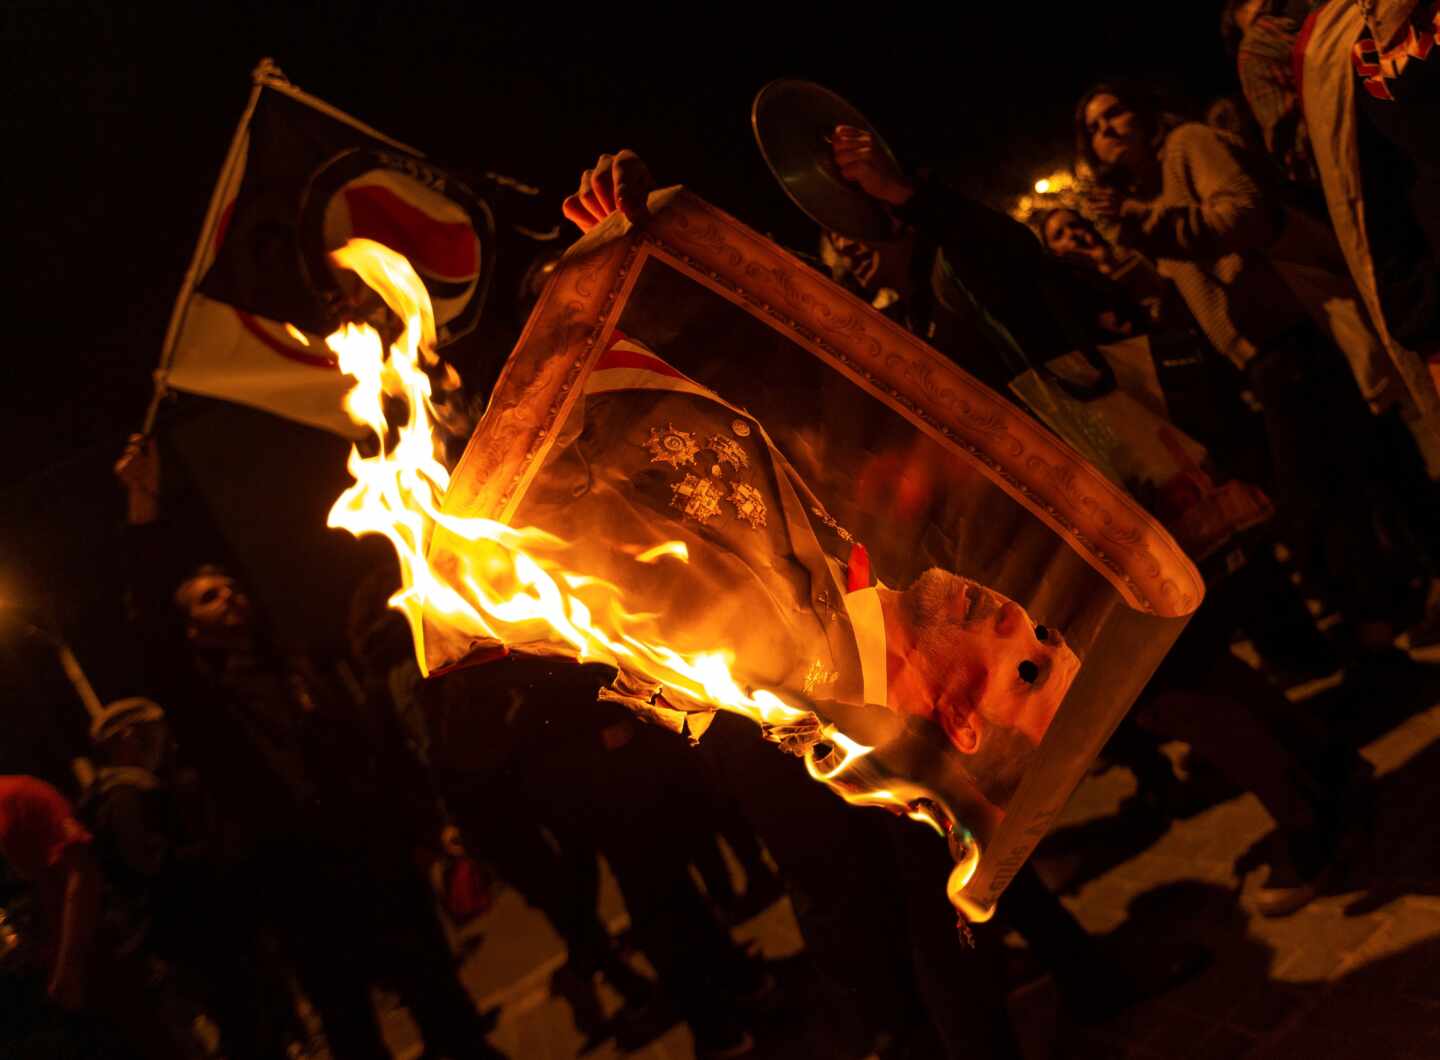 Matar al Gobierno, quemar al Rey: el debate sobre símbolos y violencia contra líderes políticos